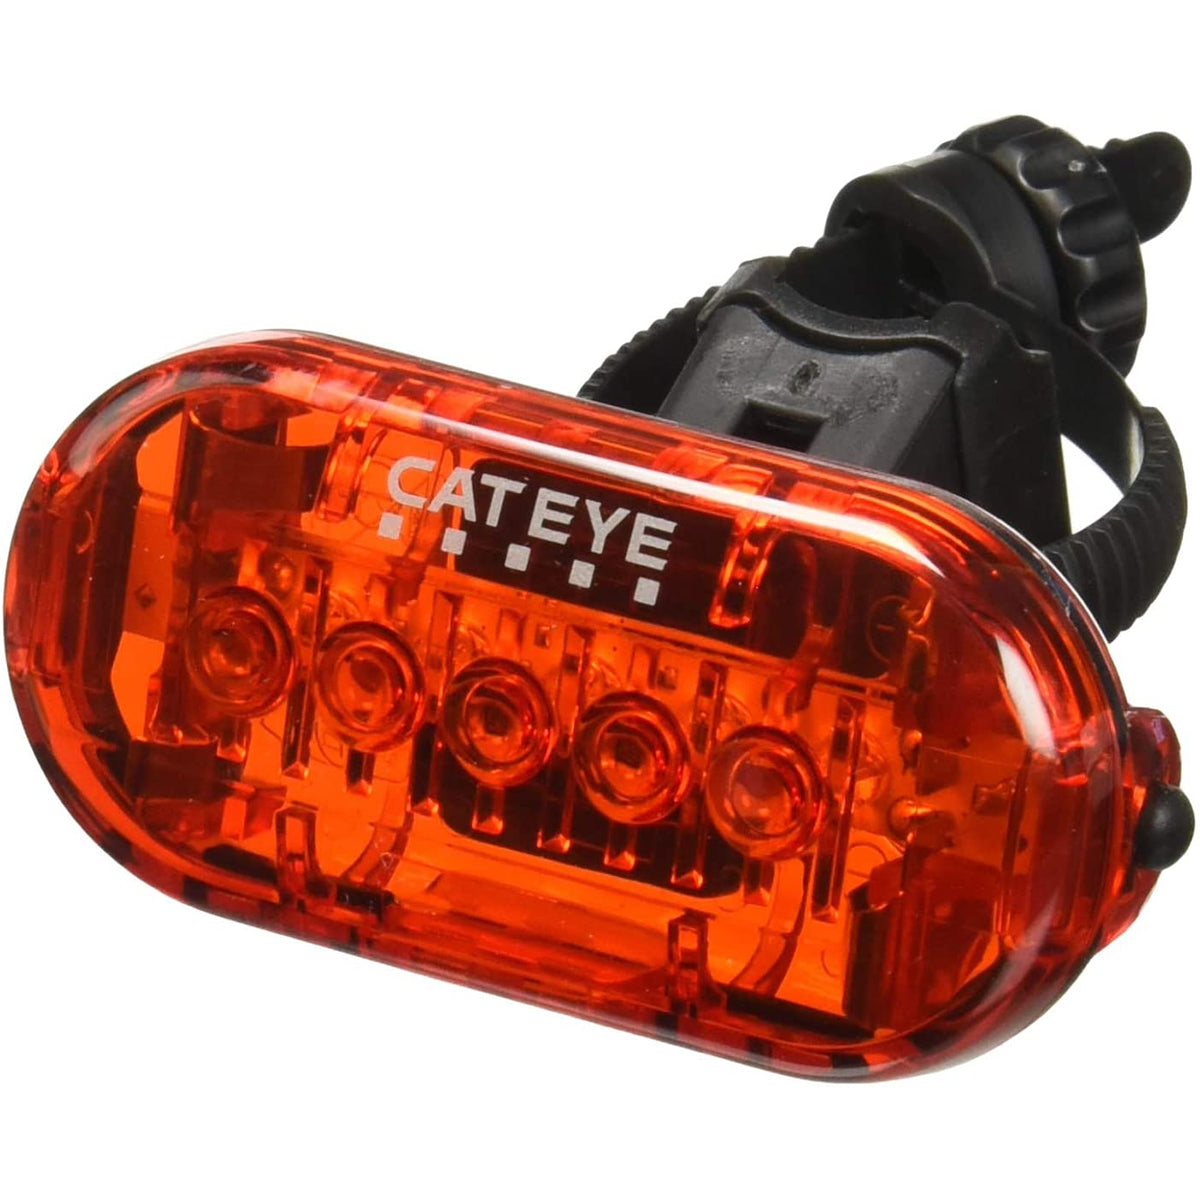 CatEye Omni 5 Cycling Rear Safety Light - TL-LD155-R CatEye